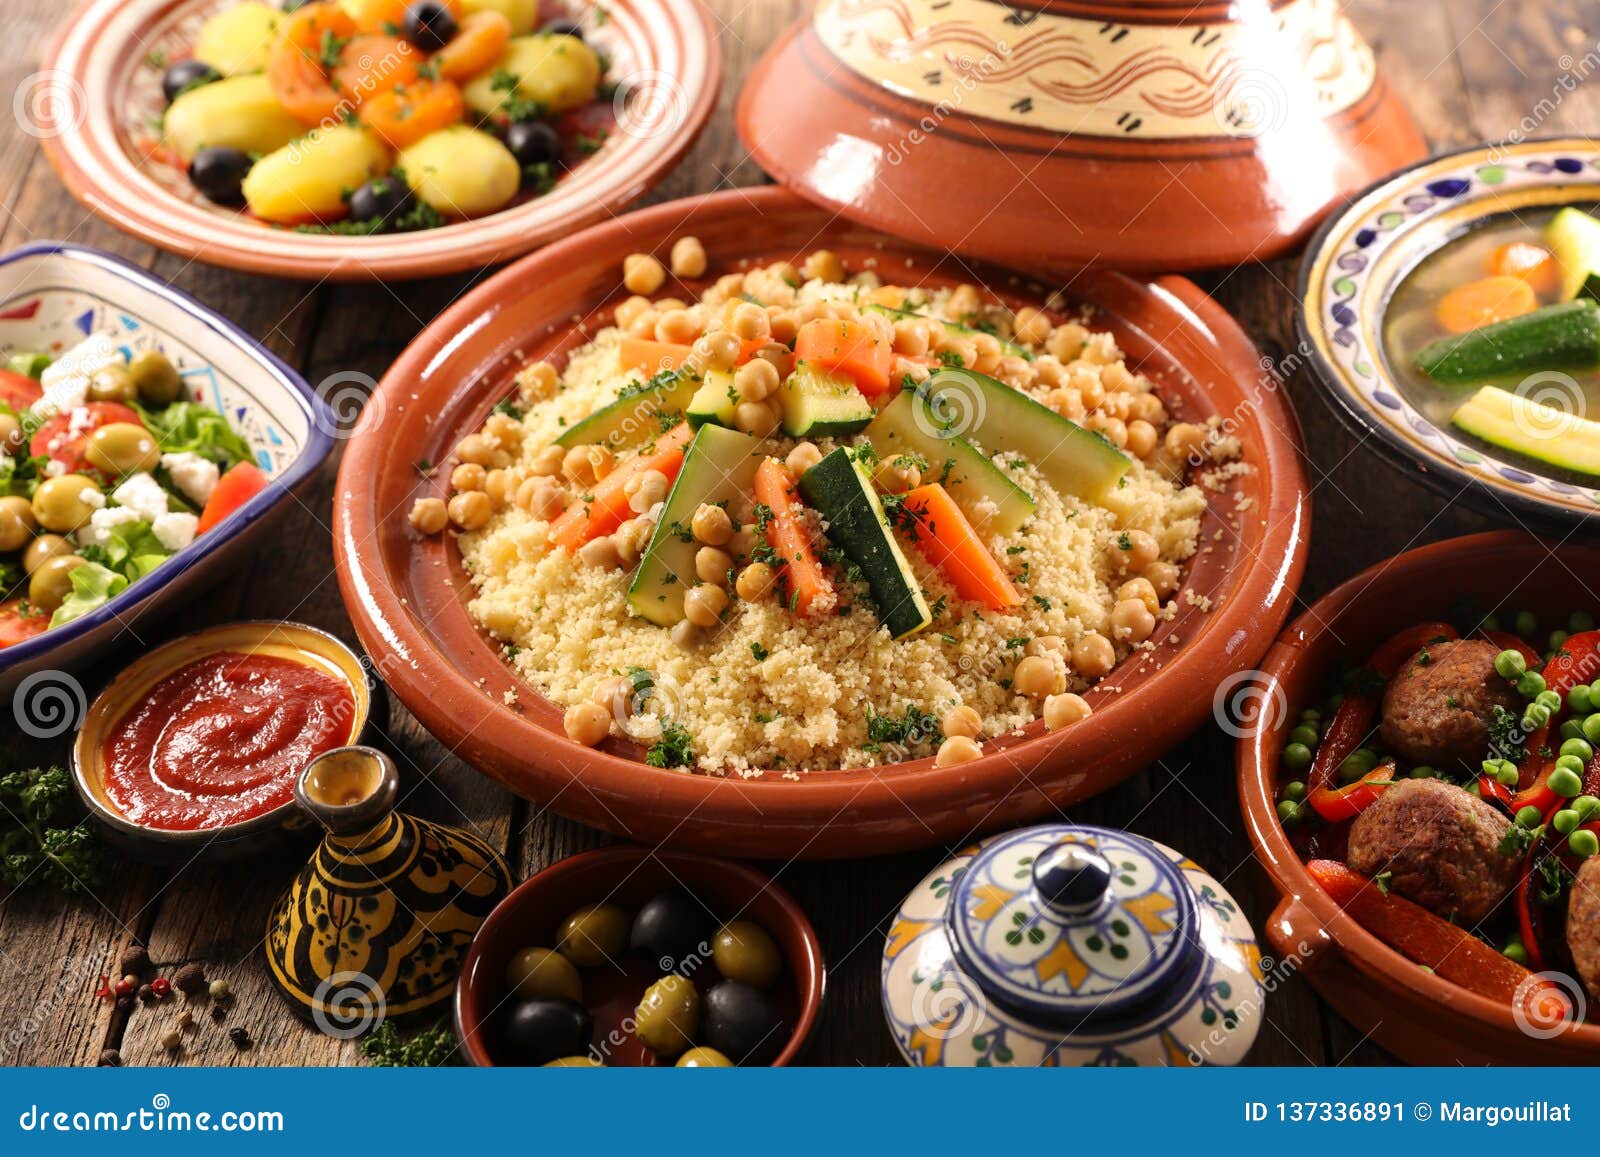 阿拉伯傳統美食「整隻駱駝BBQ」裹滿香料扒來吃太狂… | TEEPR 亮新聞